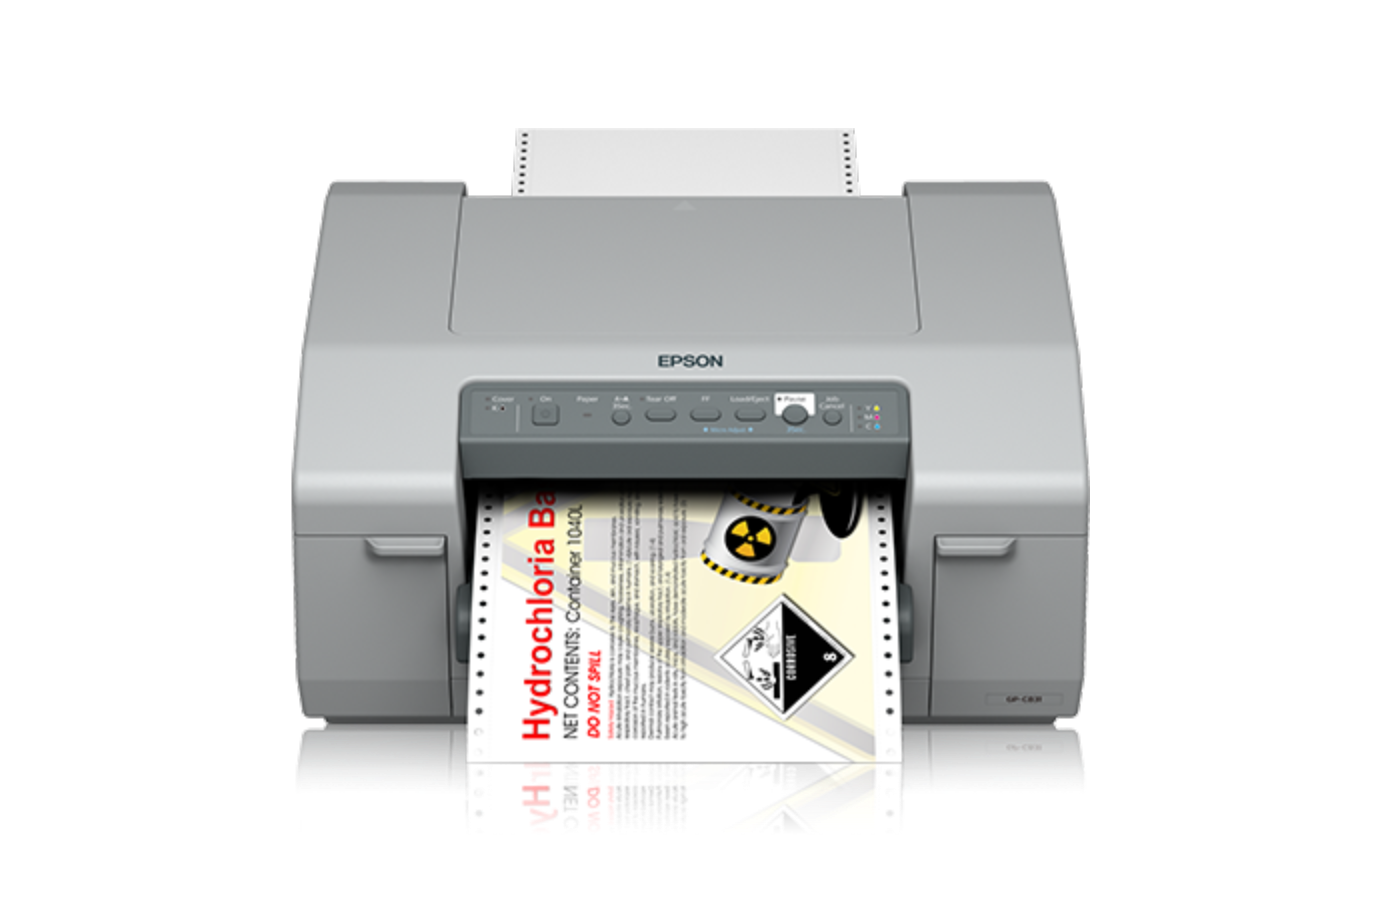 EPSON C6000 Imprimante étiquettes couleur